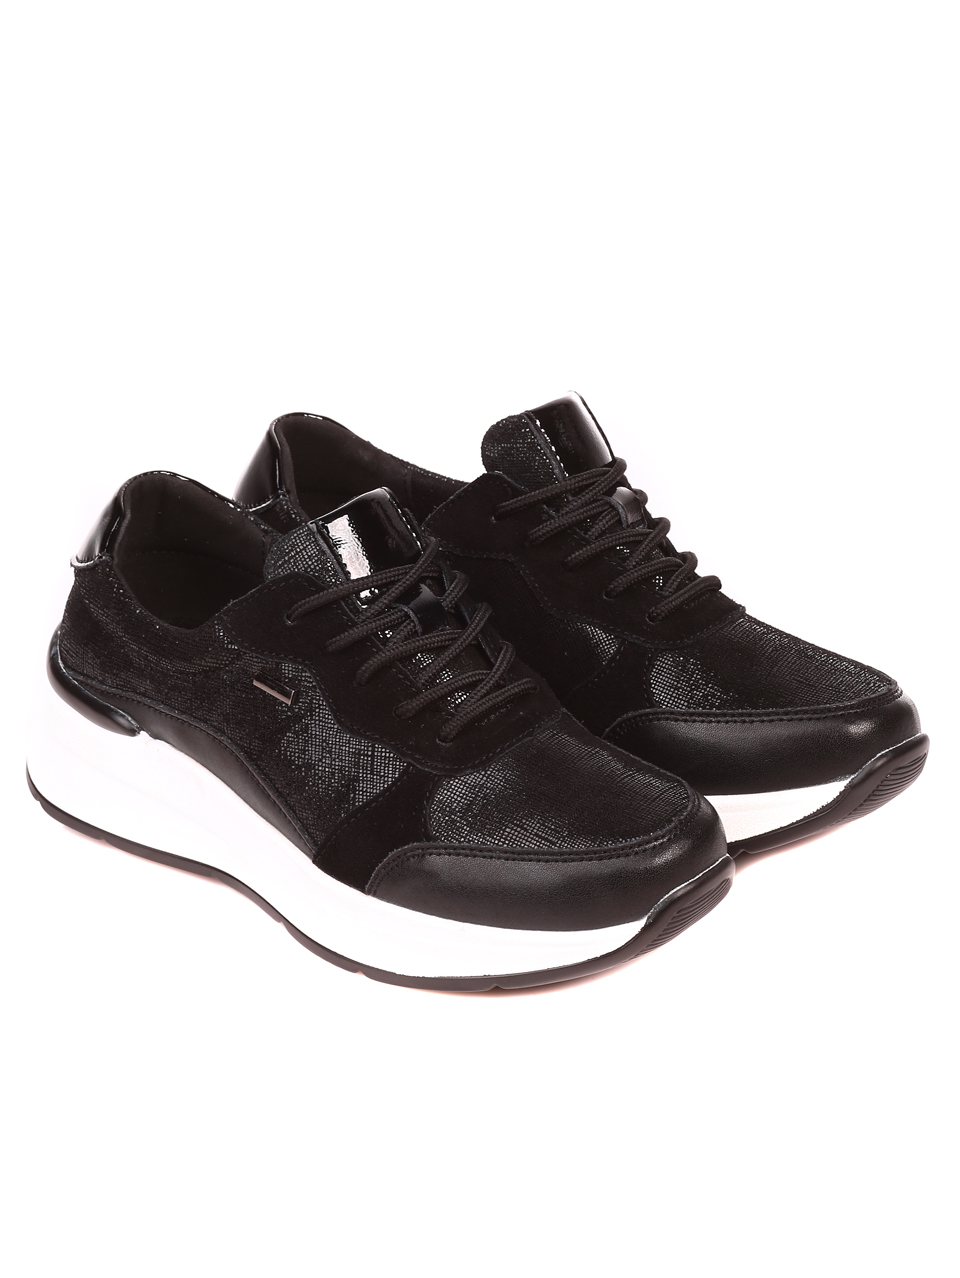 Ежедневни дамски обувки от естествеа кожа и велур в черно 3AF-21569 black